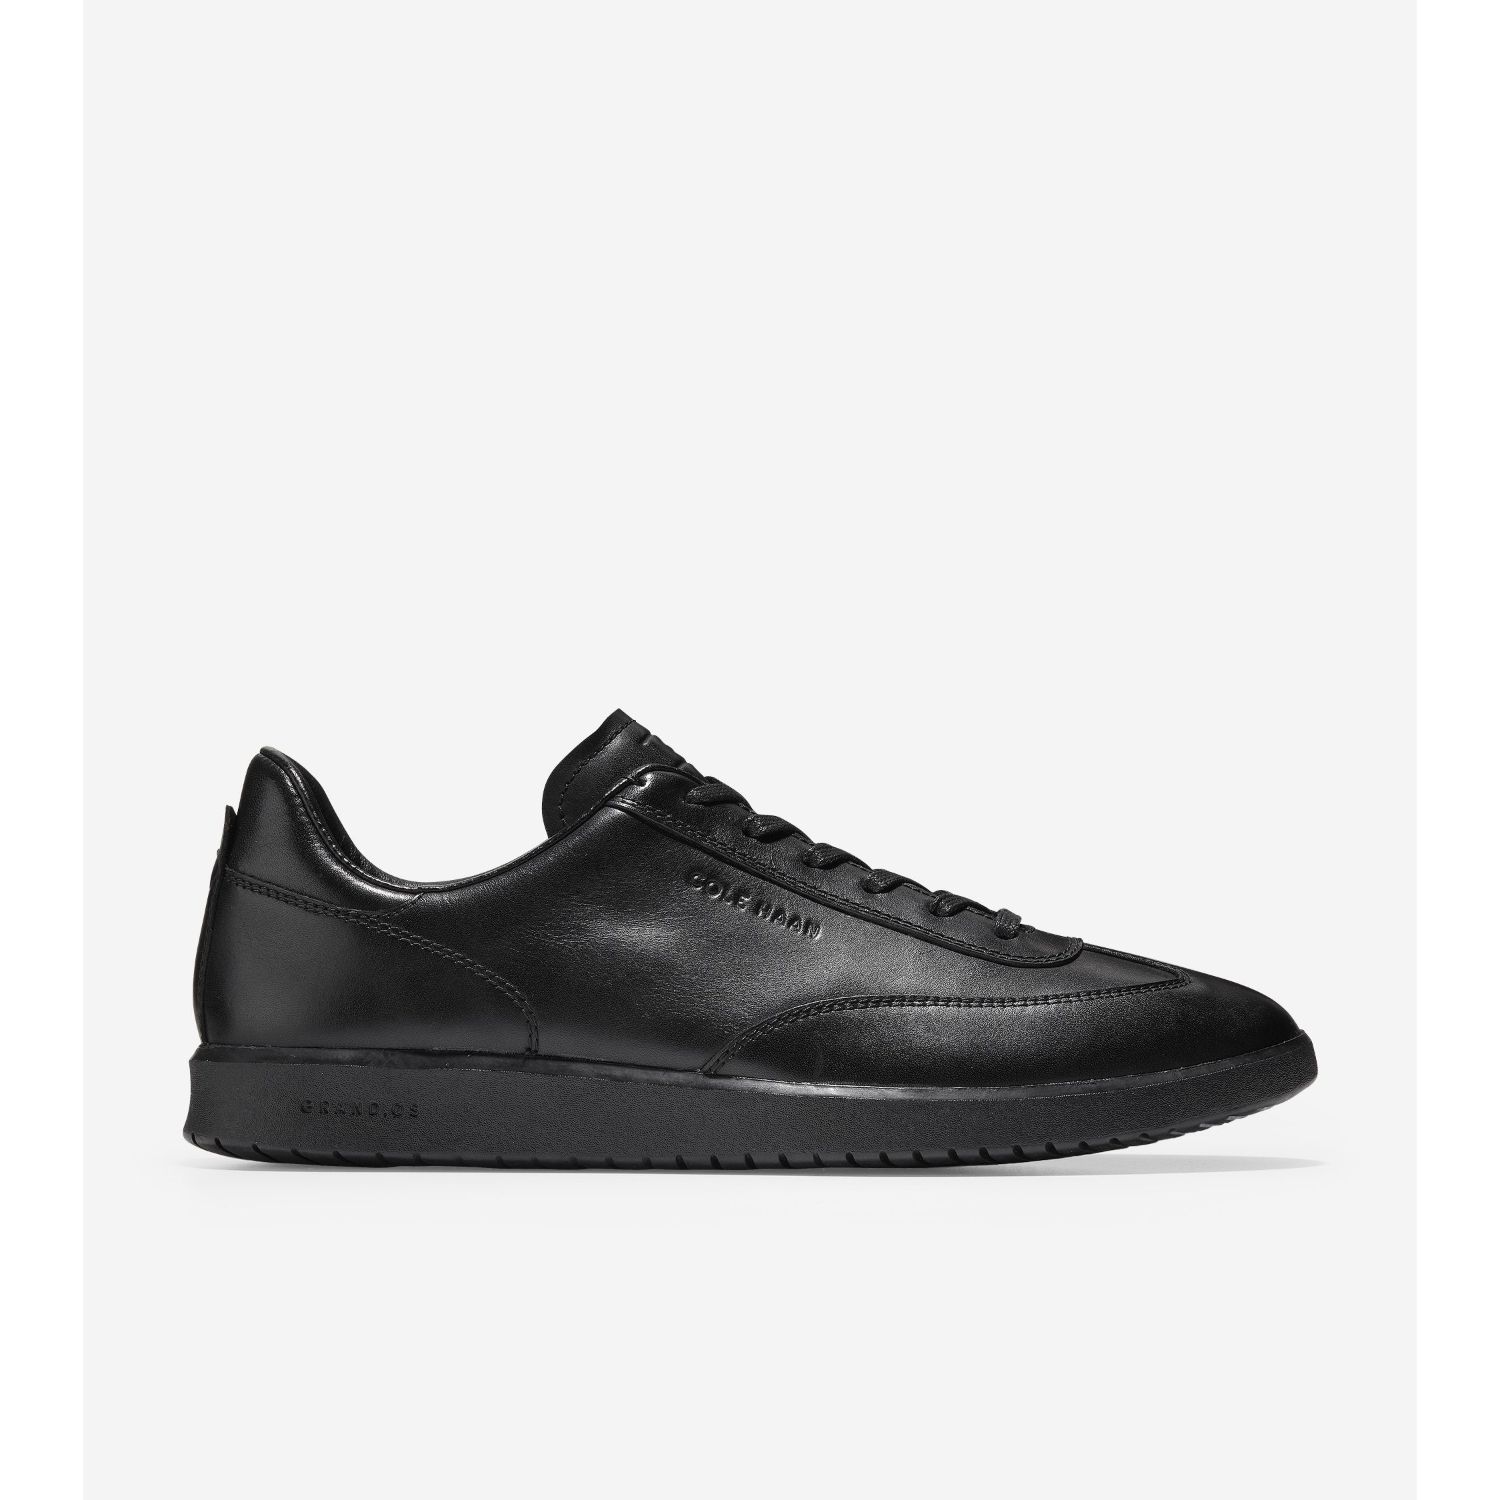 cohan shoes website